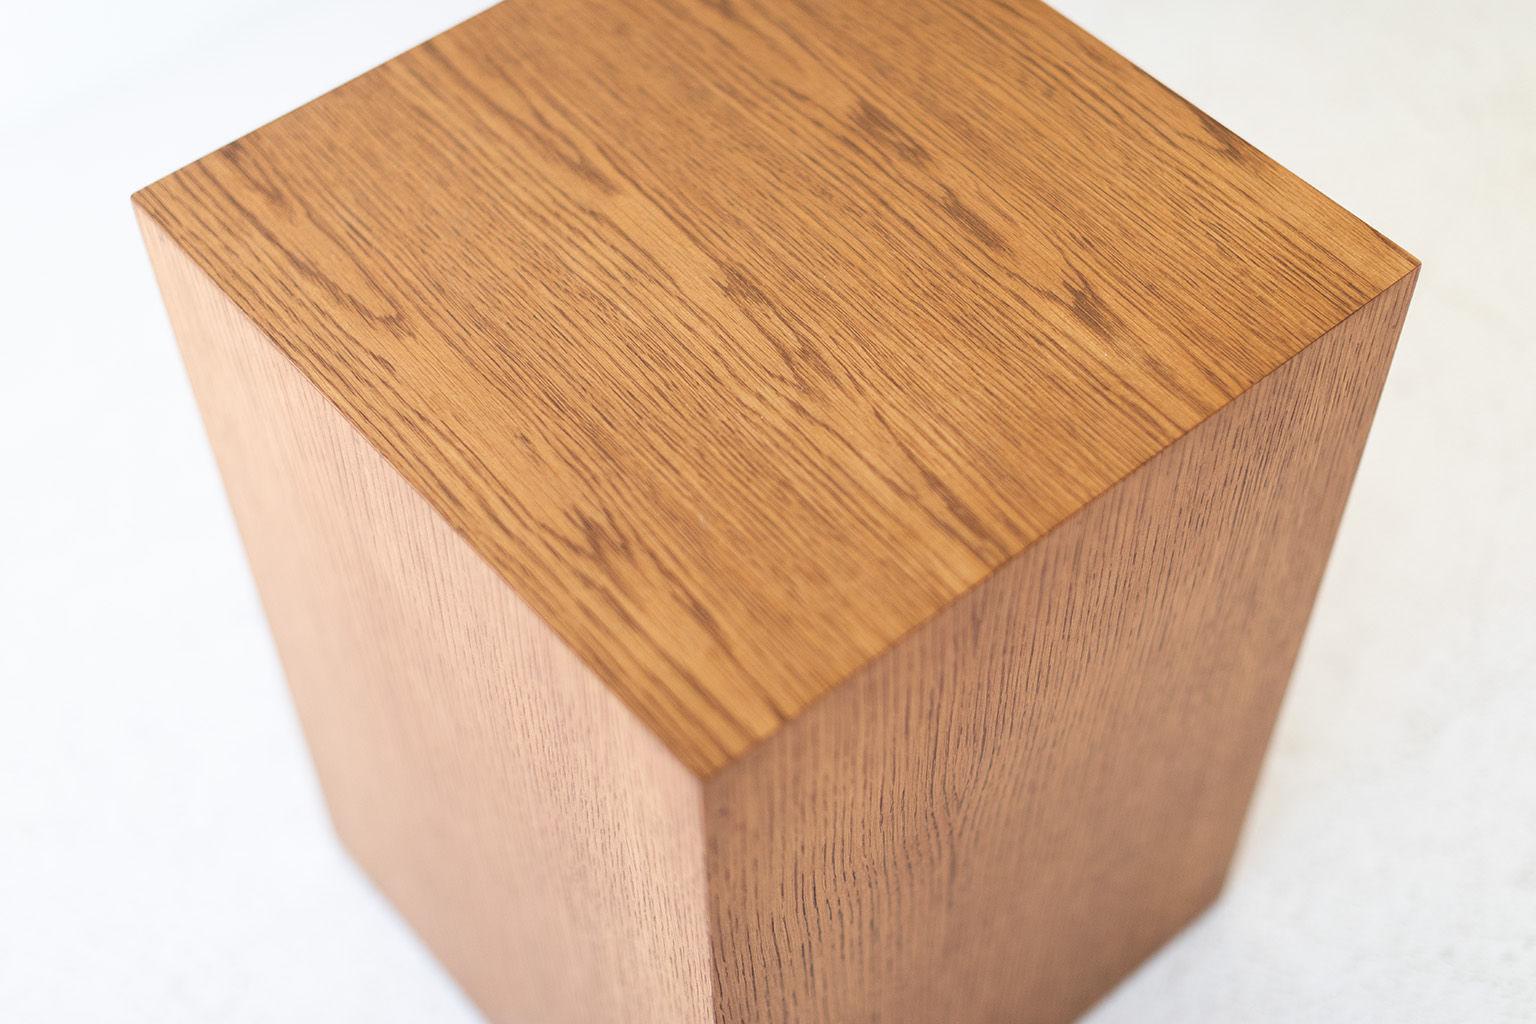 Dieser moderne Beistelltisch aus Eichenholz wird im Herzen von Ohio aus lokalem Holz hergestellt. Jeder Tisch ist eine handgefertigte, auf Gehrung geschnittene Kiste aus Weißeichenfurnier und mit einer schönen, matten, handelsüblichen Lackierung